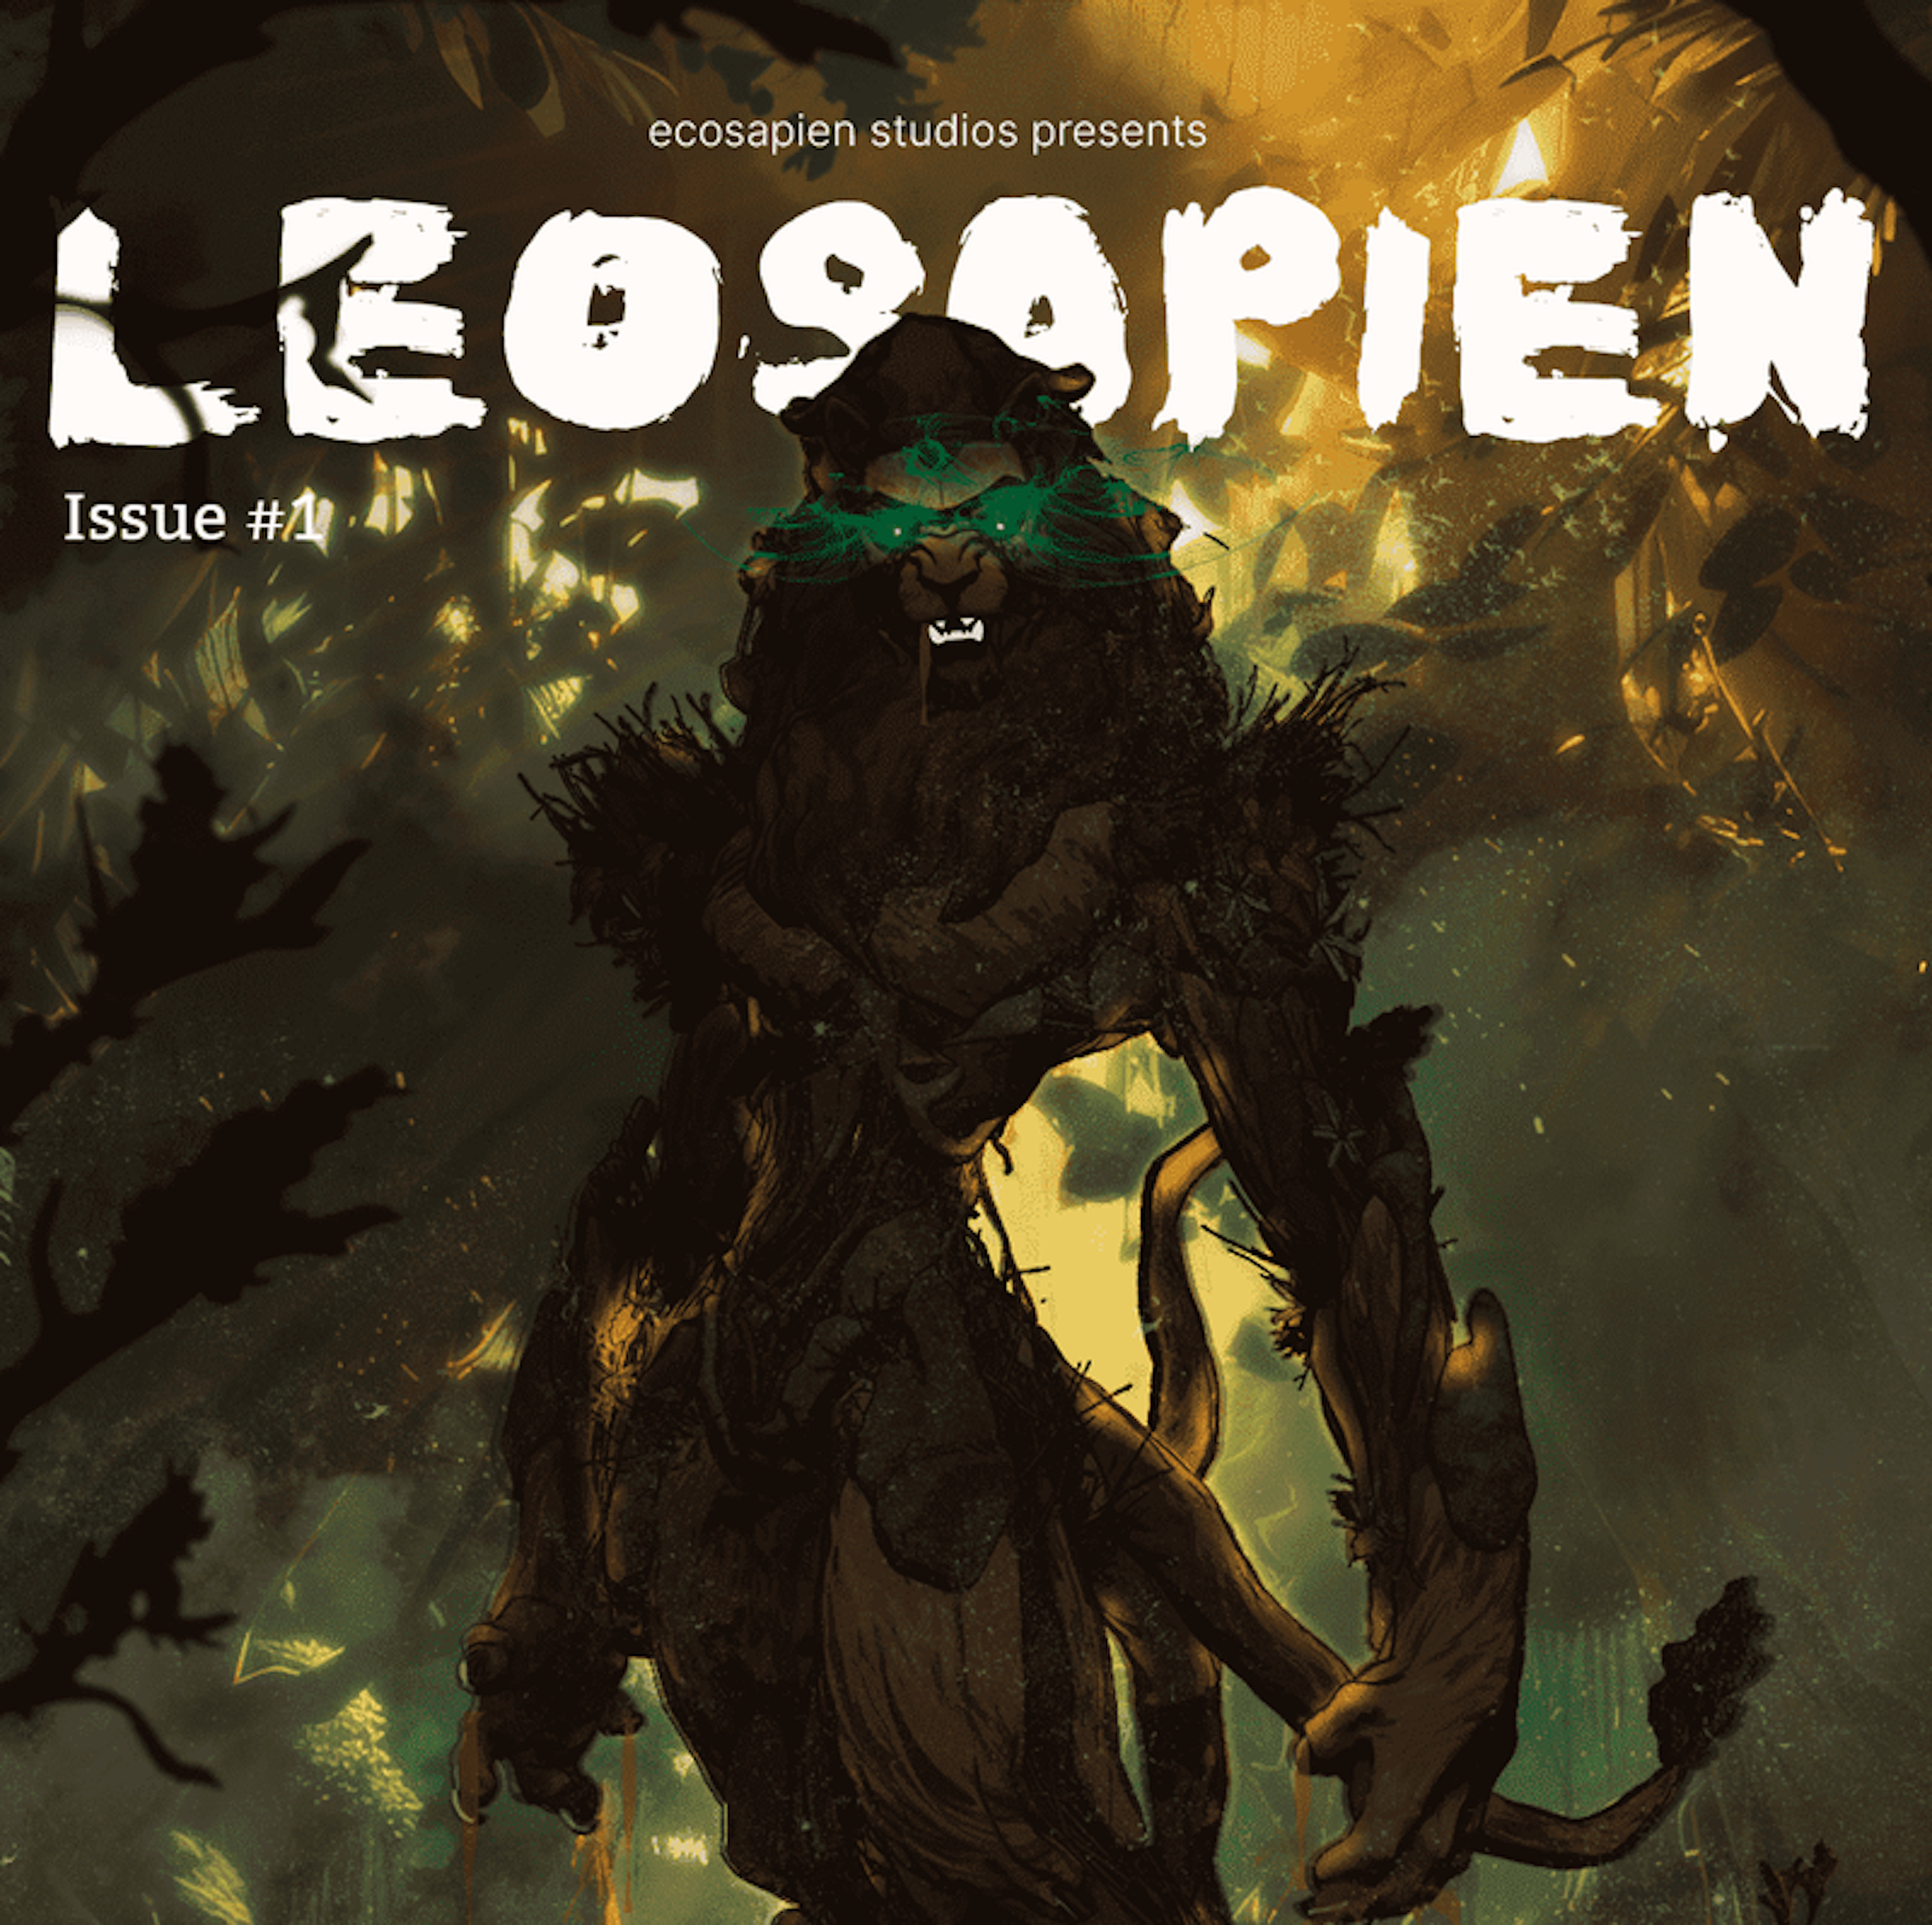 Leosapien Issue #1 cover